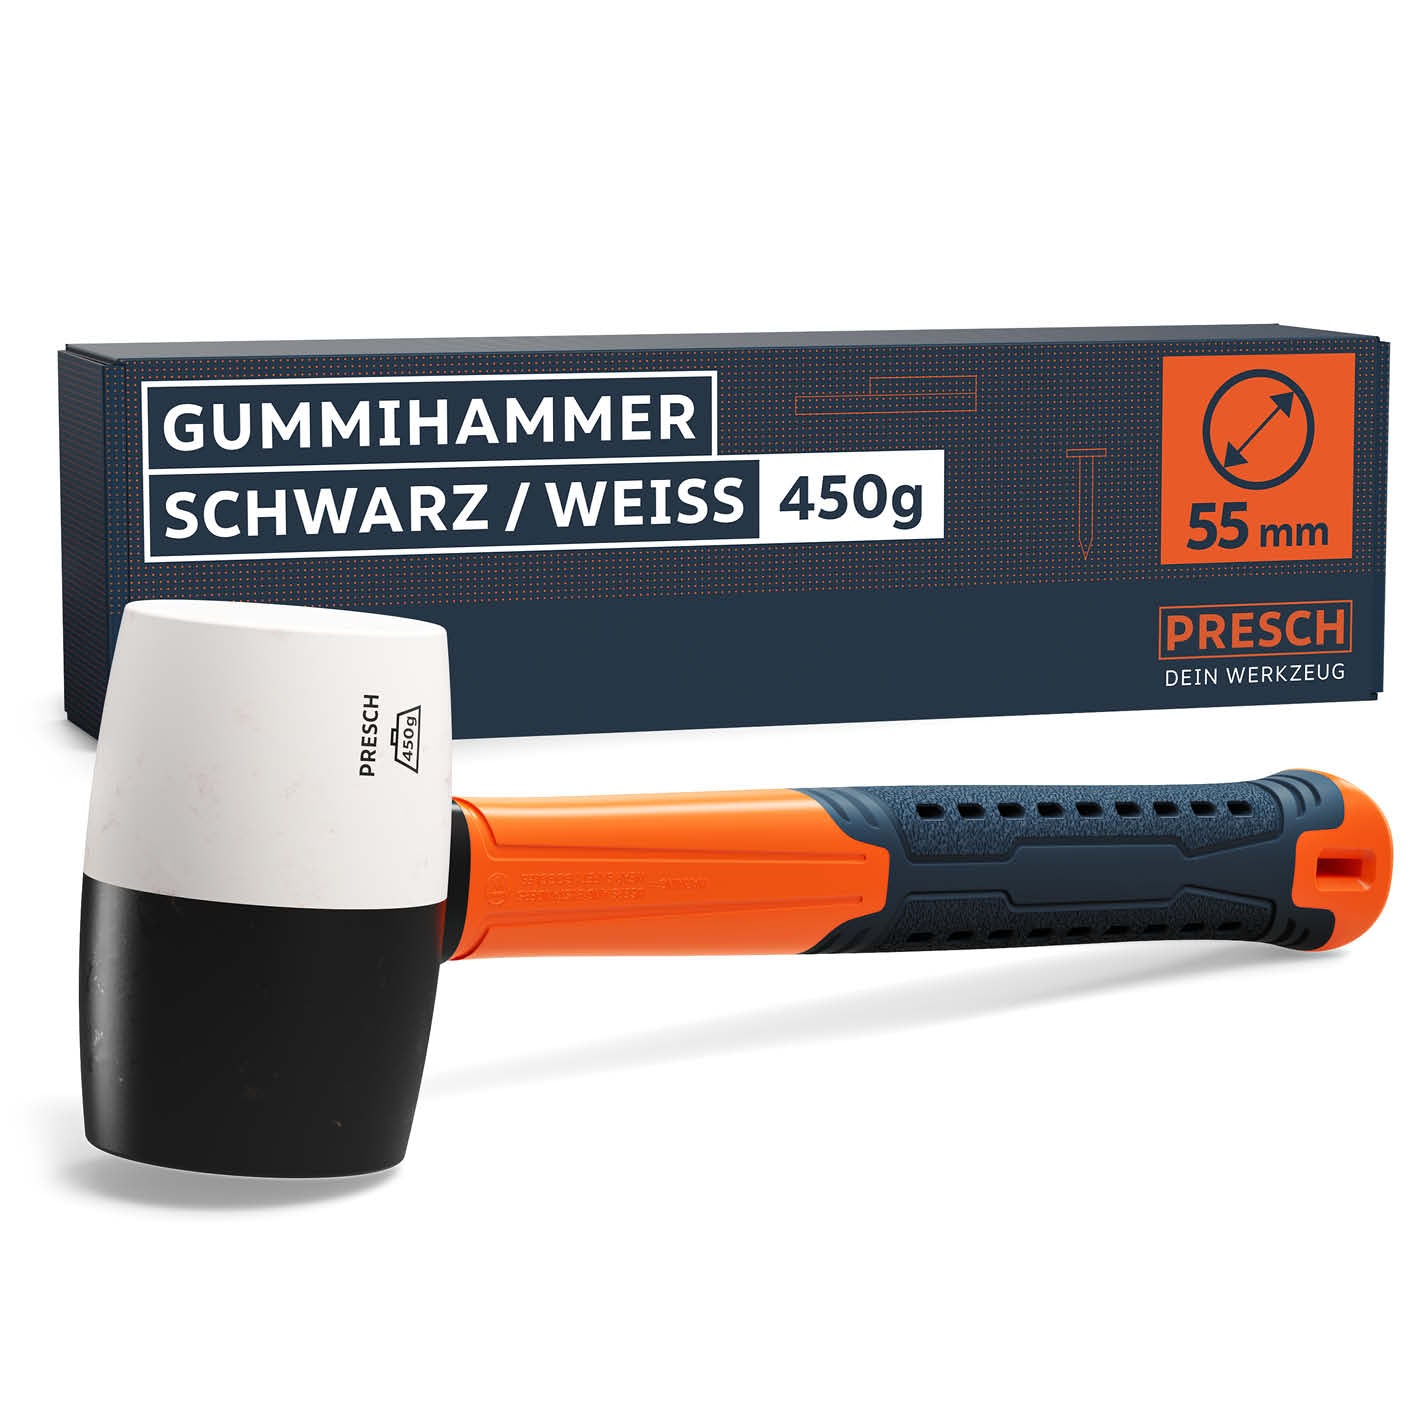 PRESCH Gummihammer in Schwarz-Weiß mit ergonomischem Griff und 450g Gewicht, Schonhammer für präzise Schläge